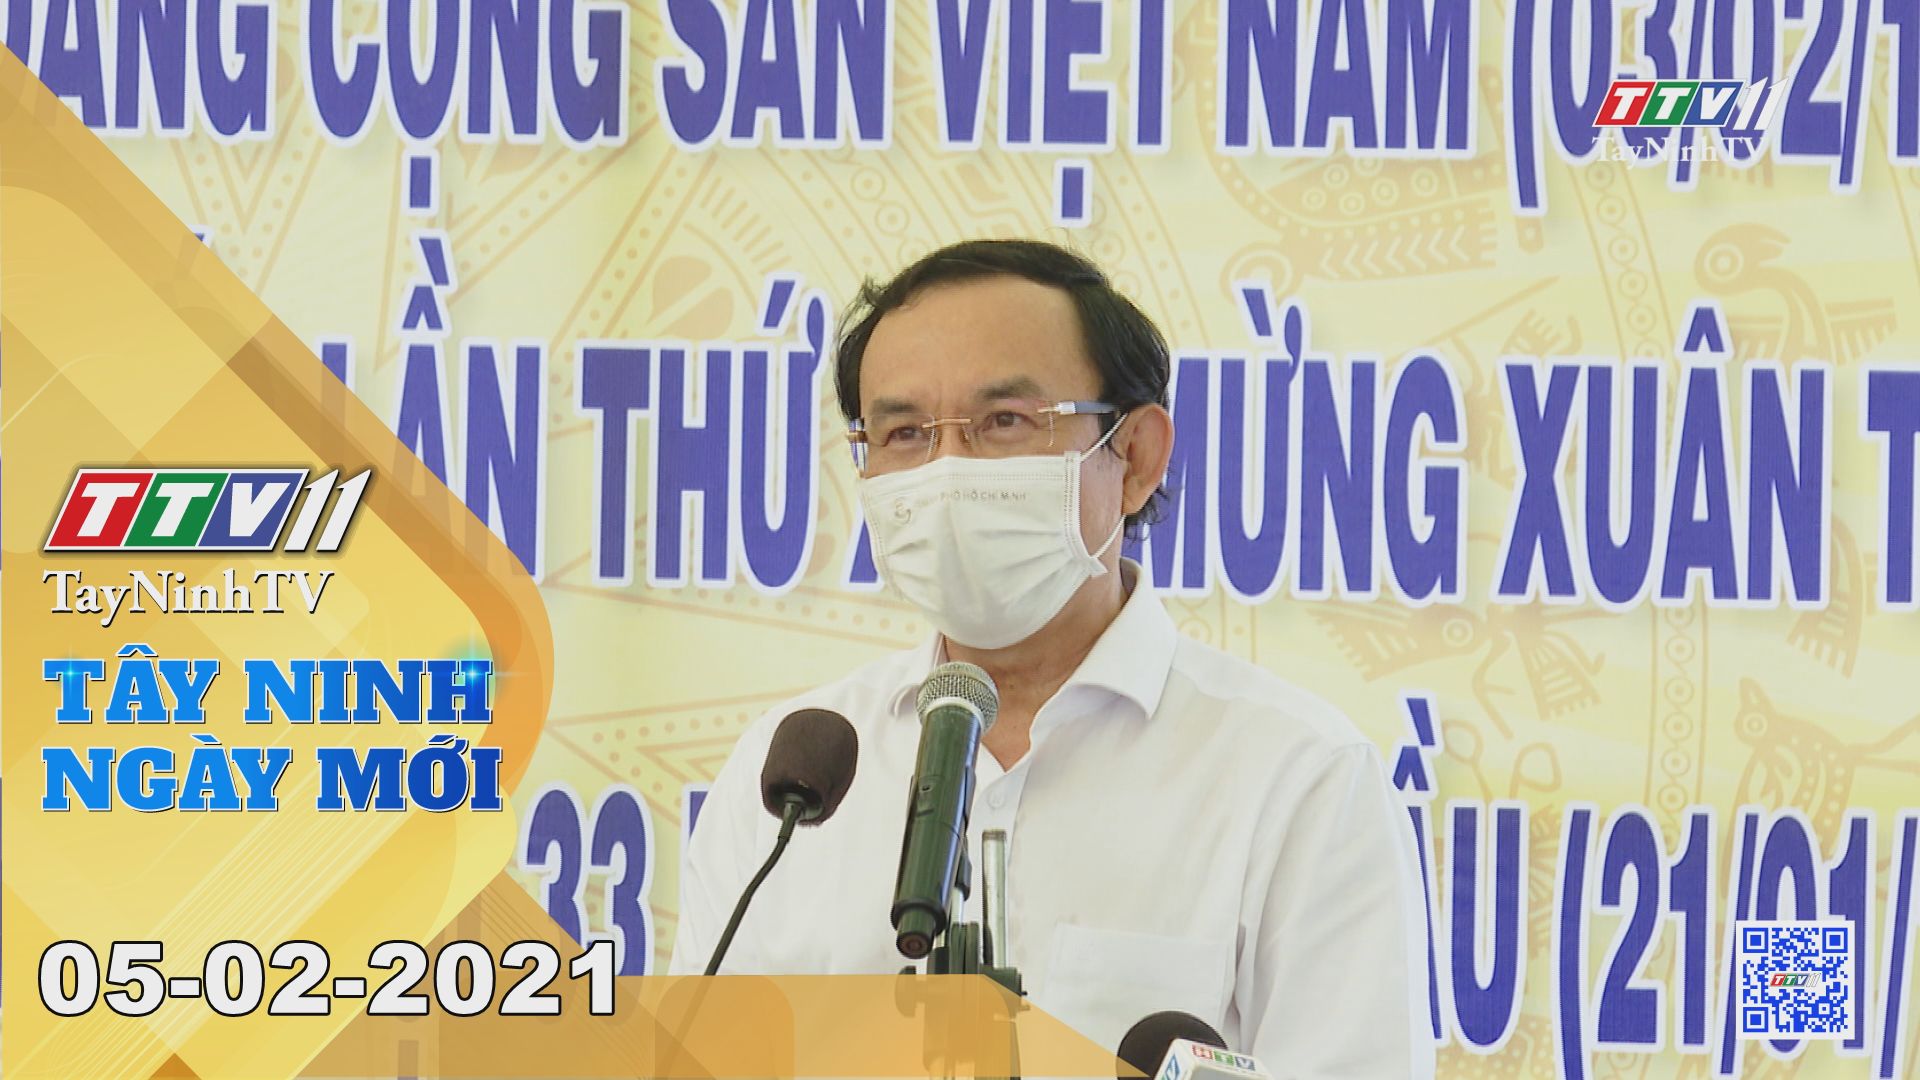 Tây Ninh Ngày Mới 05-02-2021 | Tin tức hôm nay | TayNinhTV